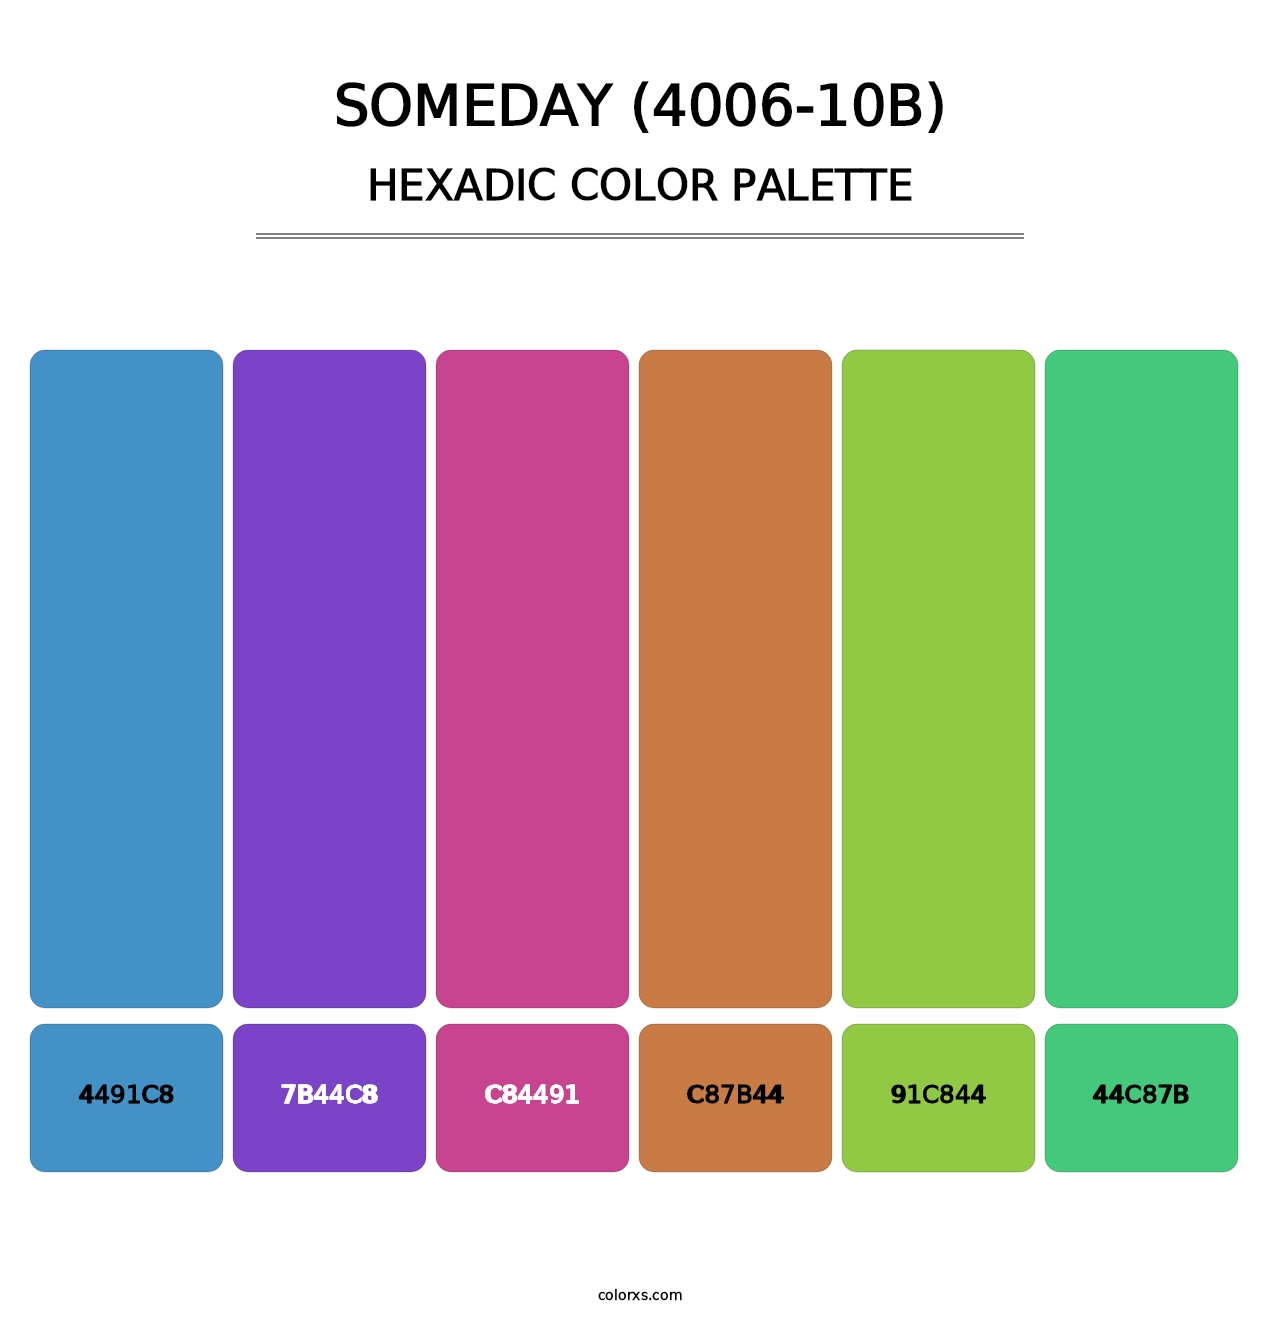 Someday (4006-10B) - Hexadic Color Palette